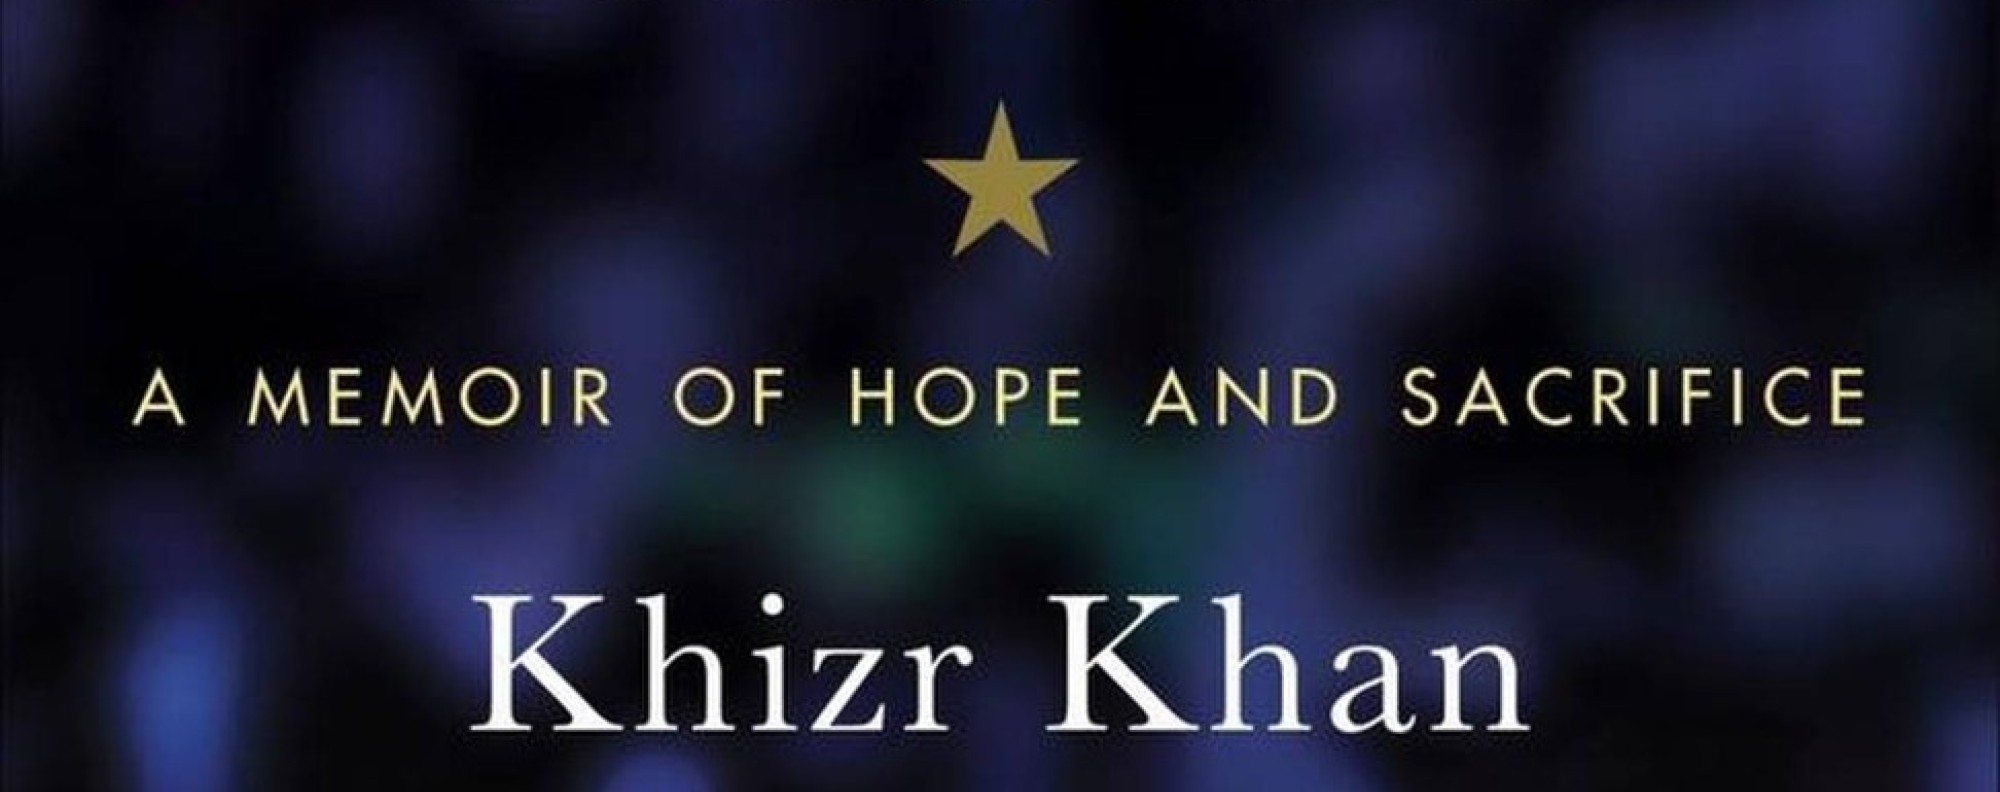 Pocket Constitution becomes bestseller after Khizr Khan's